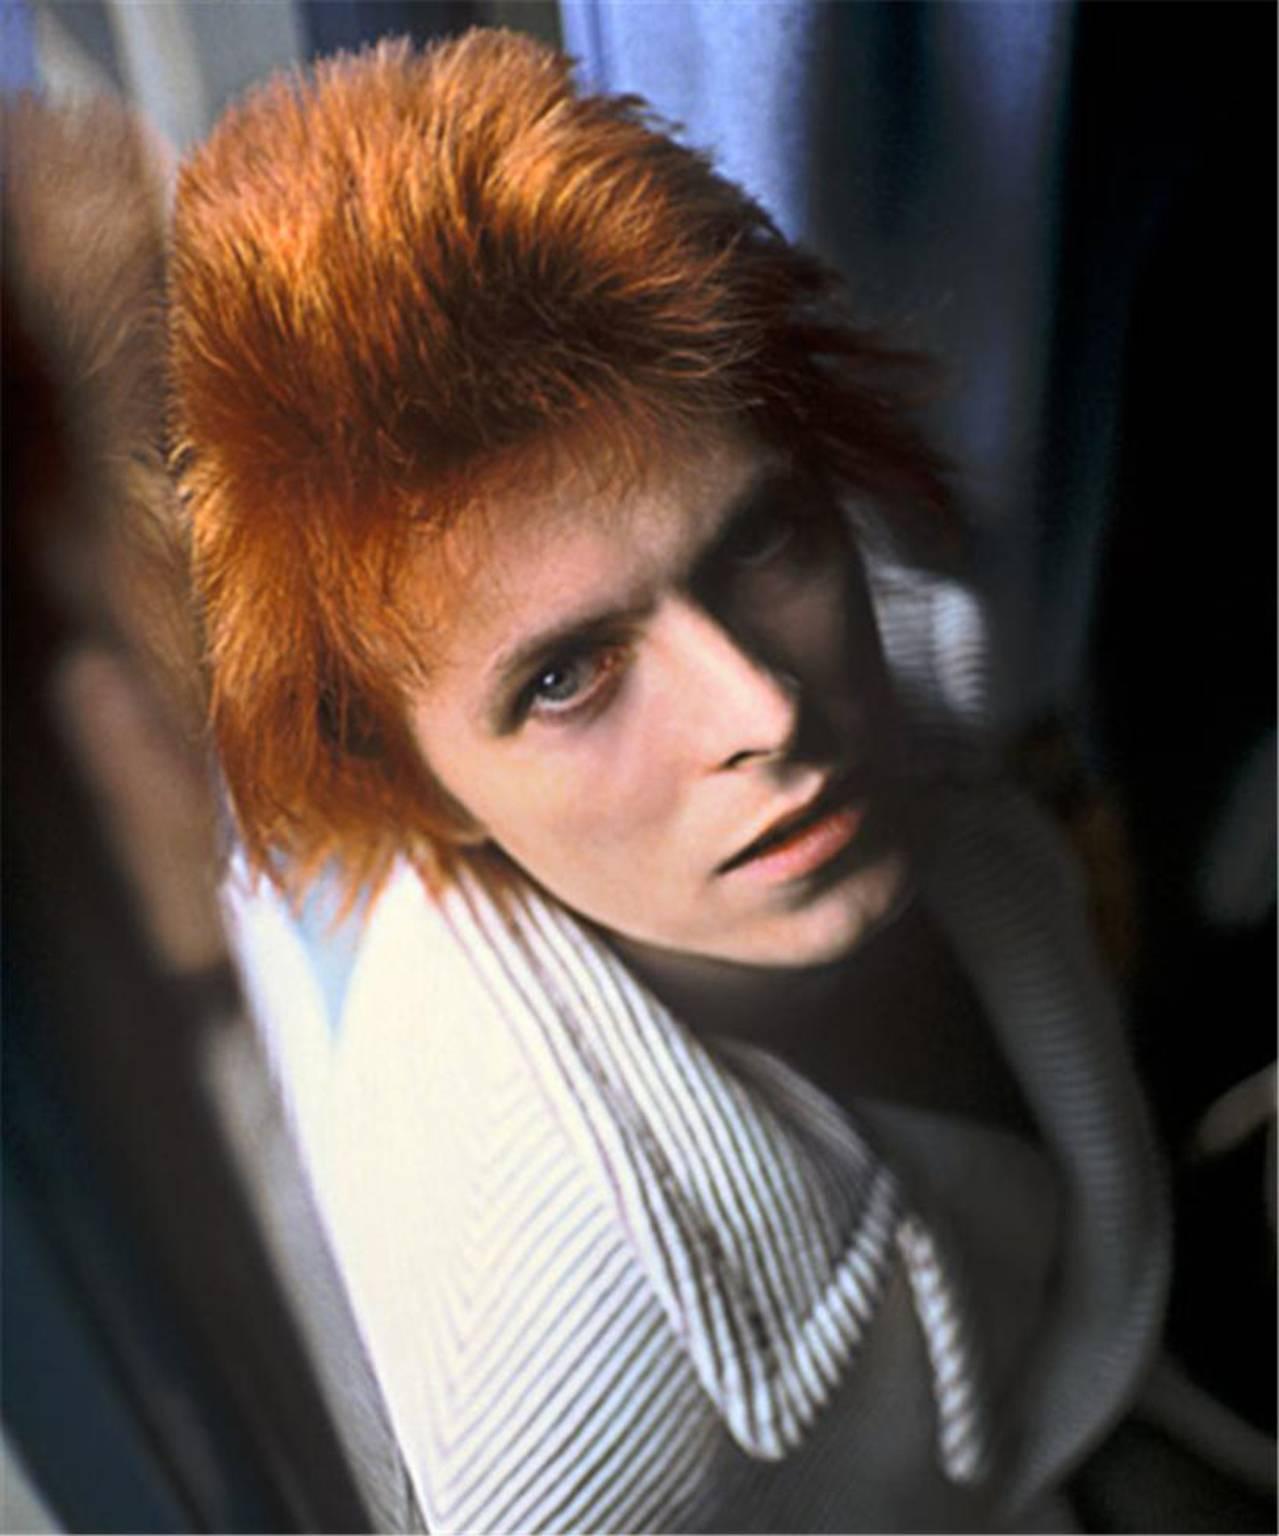 Mick Rock Portrait Photograph – David Bowie, 1972